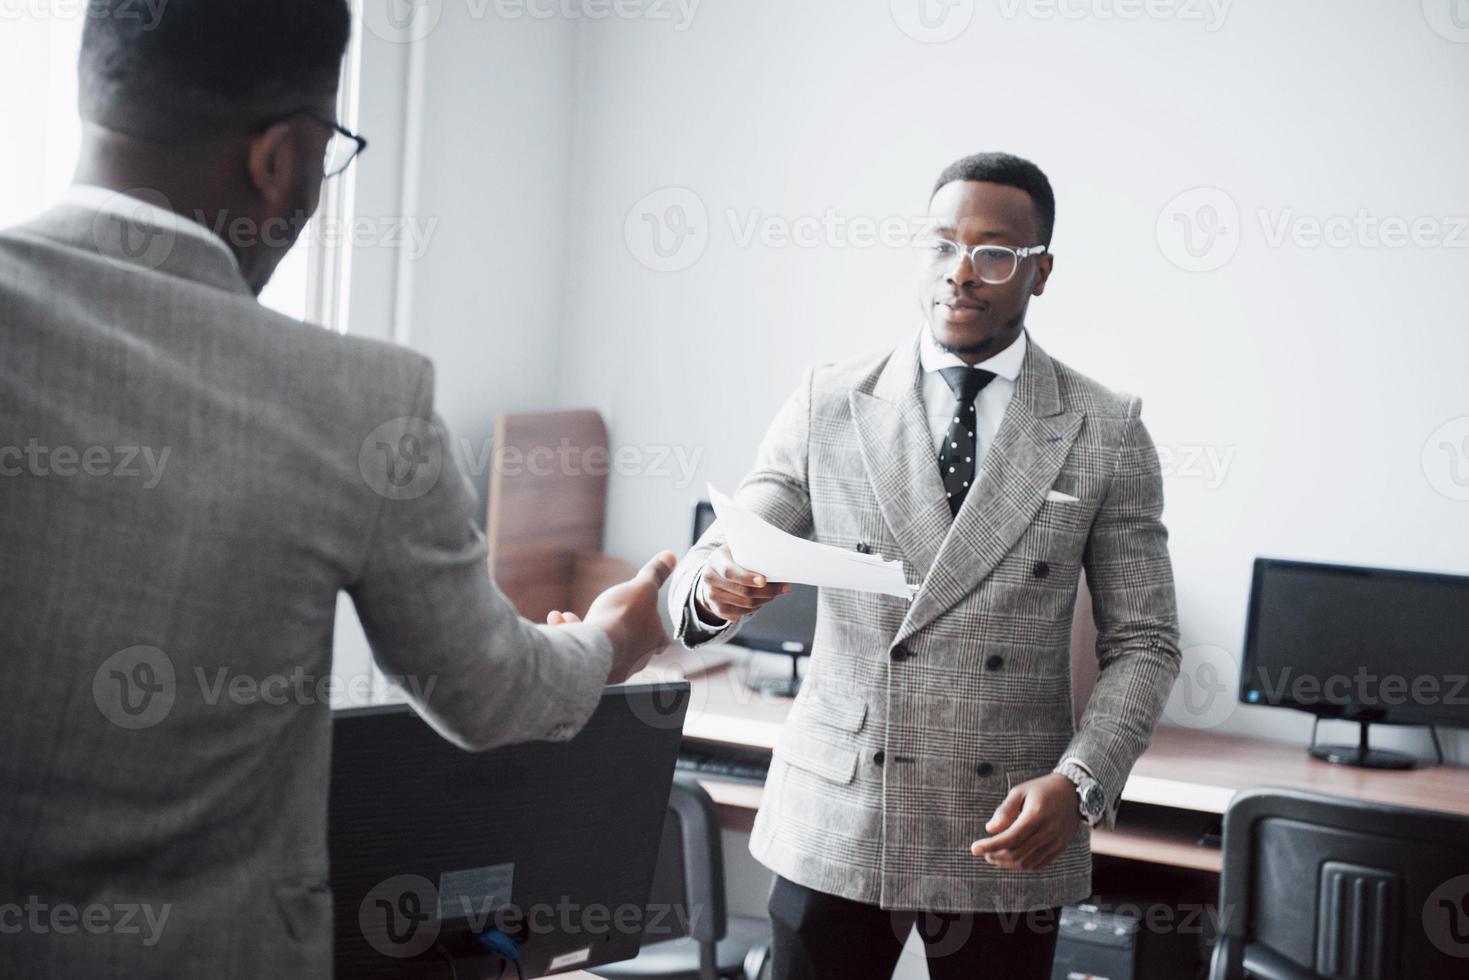 discuter d'un projet. deux hommes d'affaires noirs en tenue de soirée discutant de quelque chose tandis que l'un d'eux pointe un papier photo